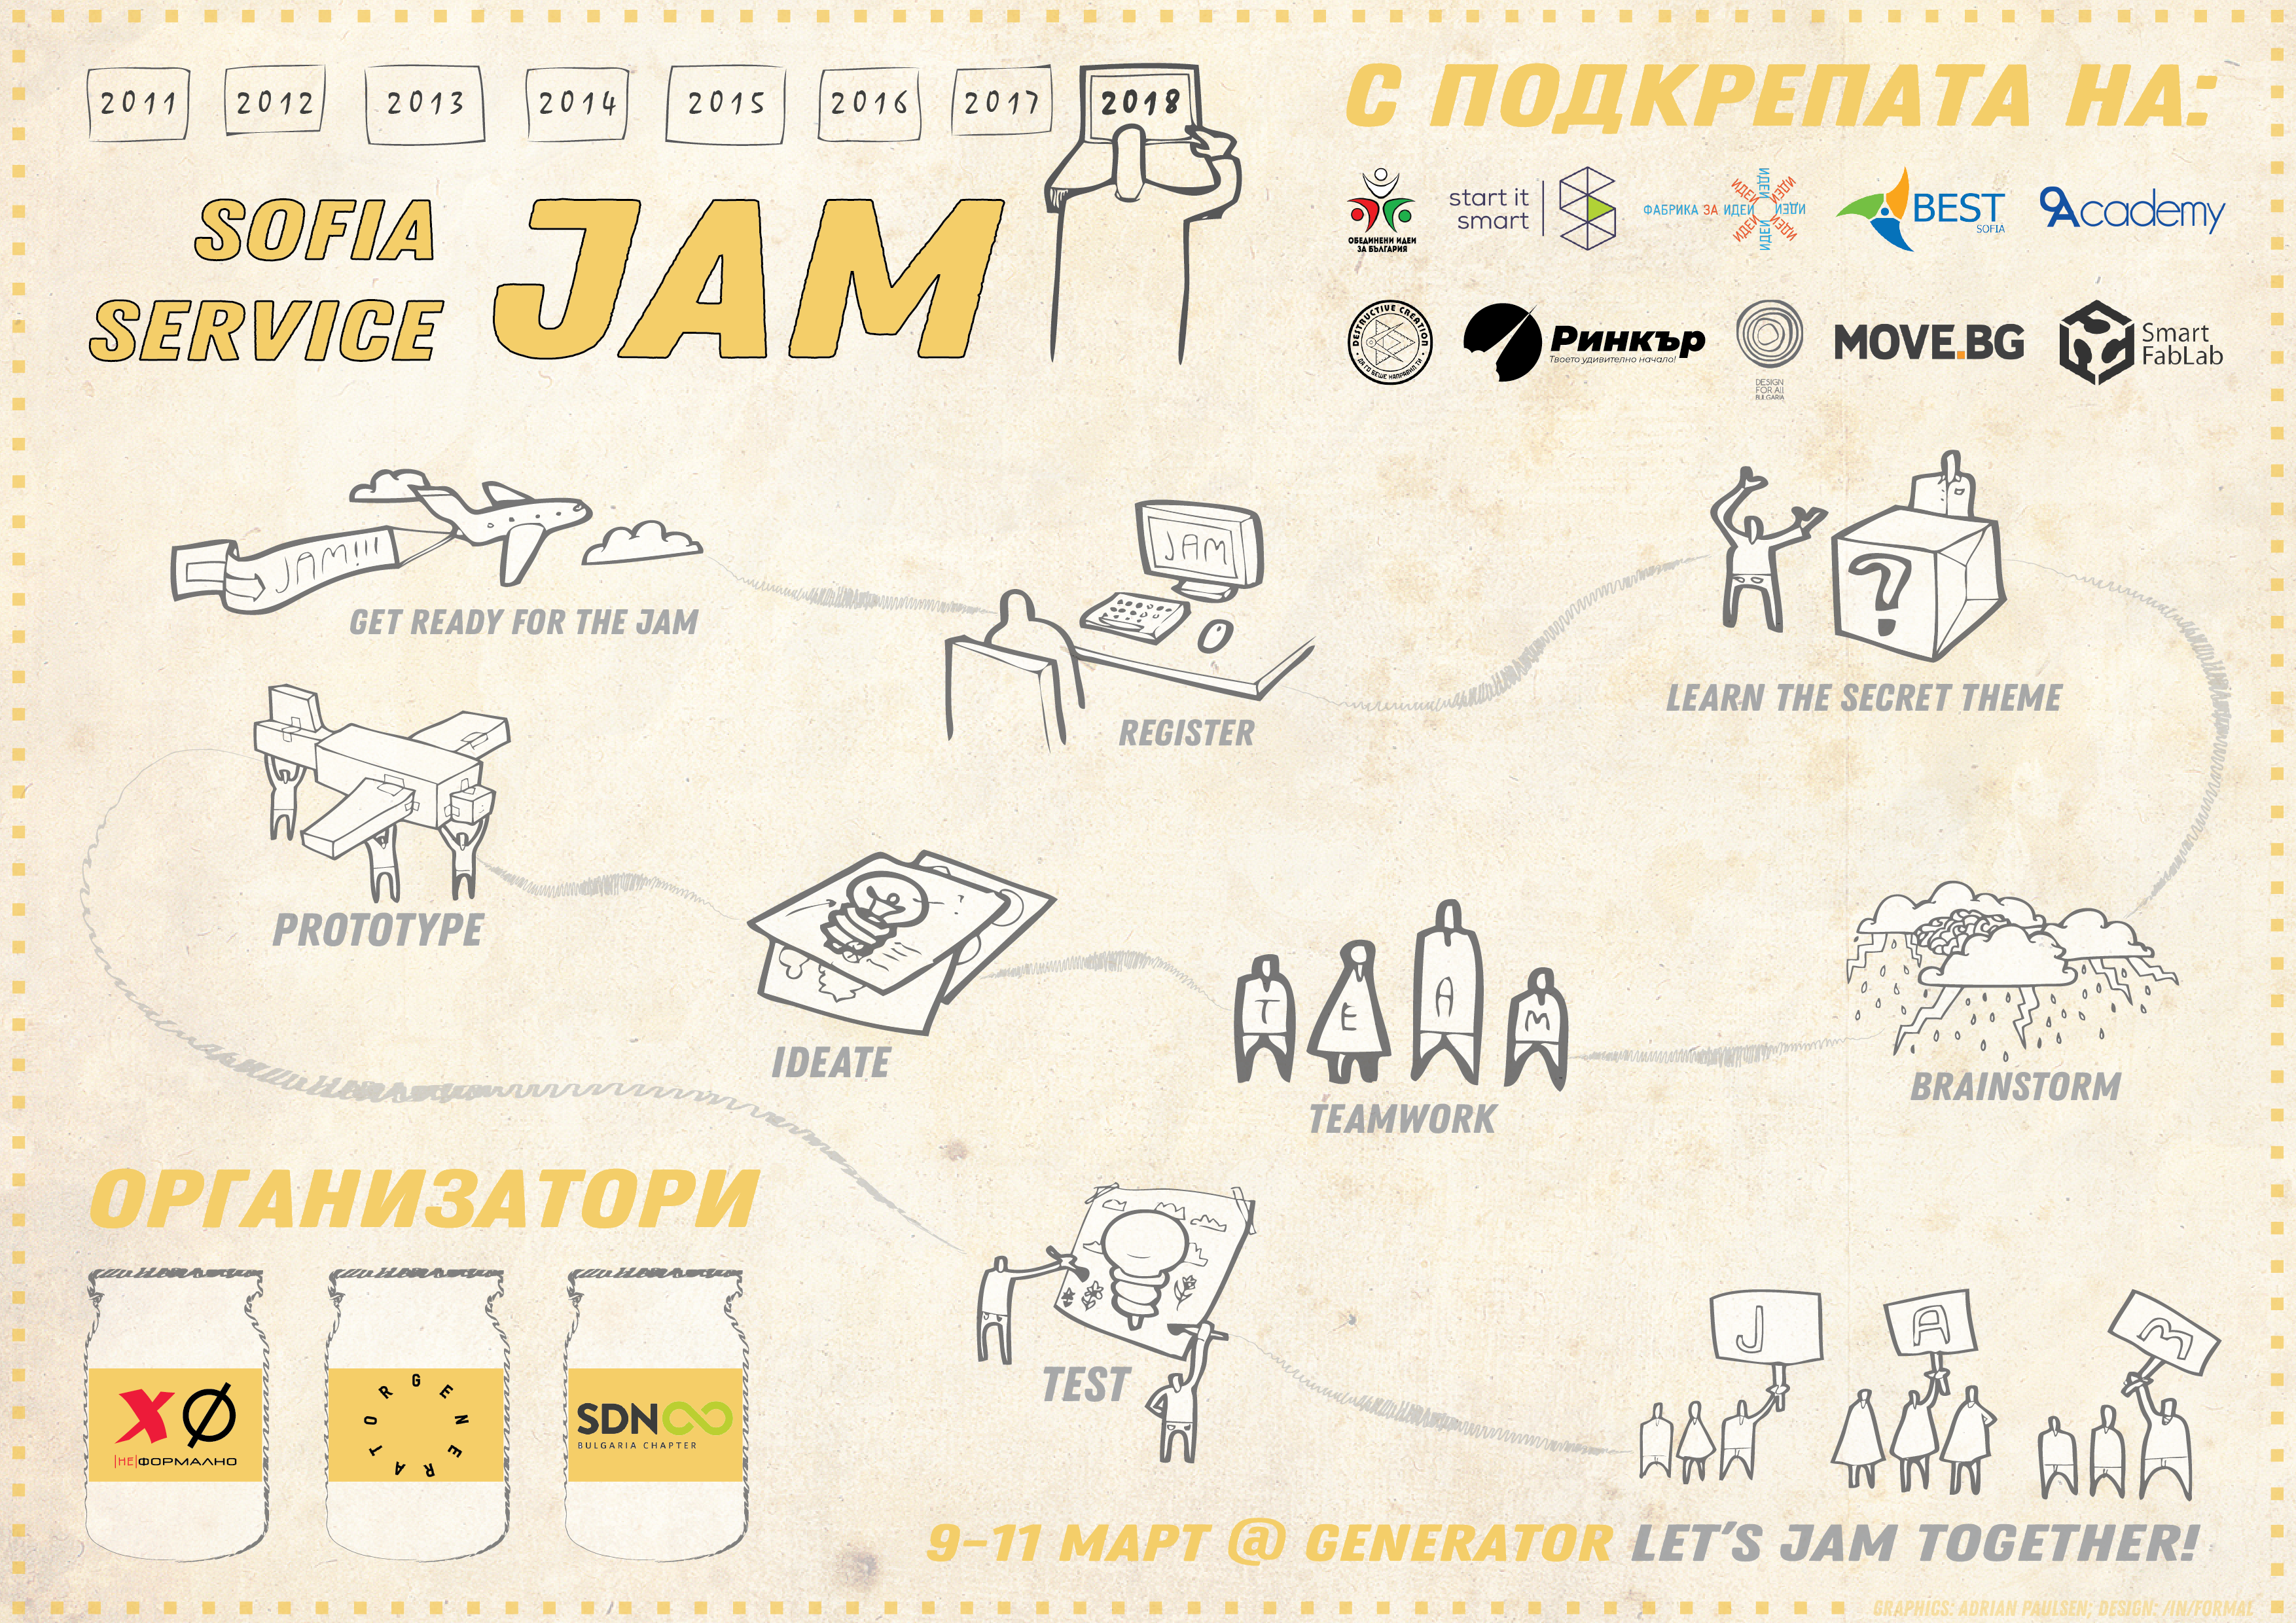 Sofia Service Jam 2018 - Let’s jam together! 1